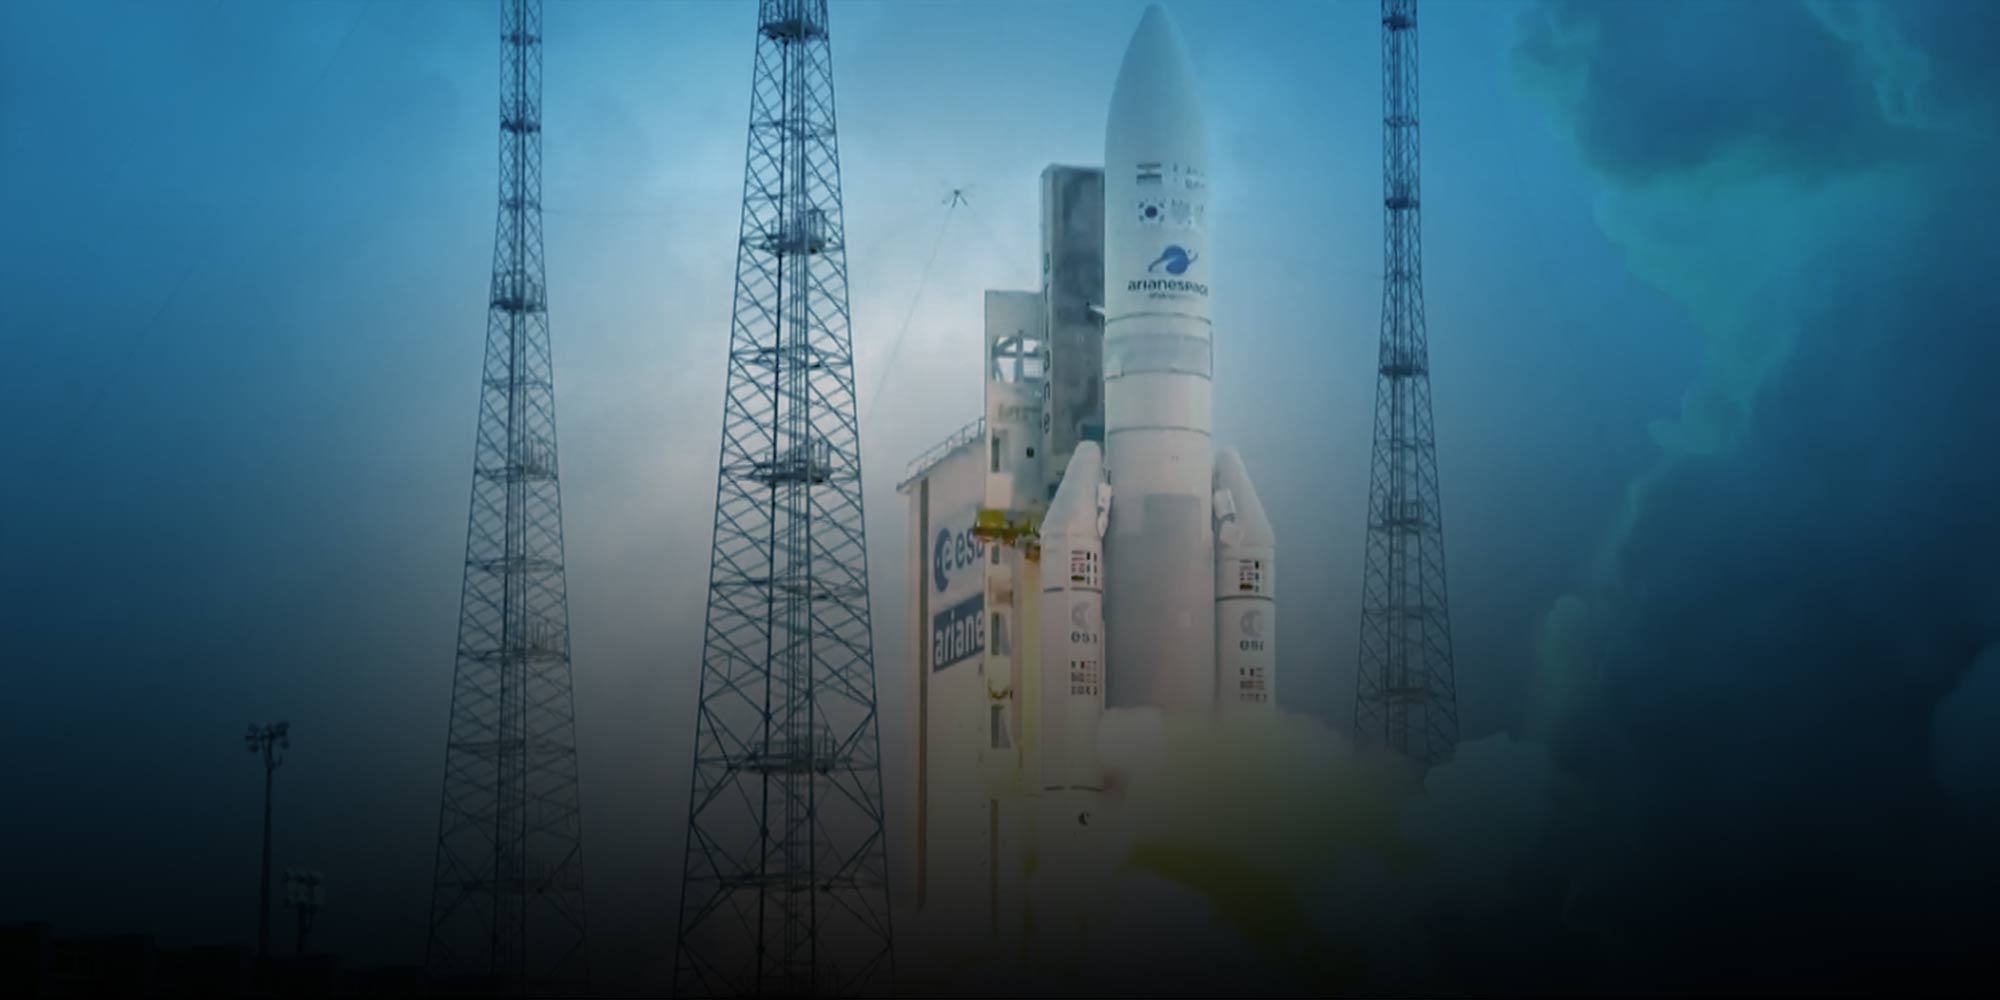 Ariane Launch